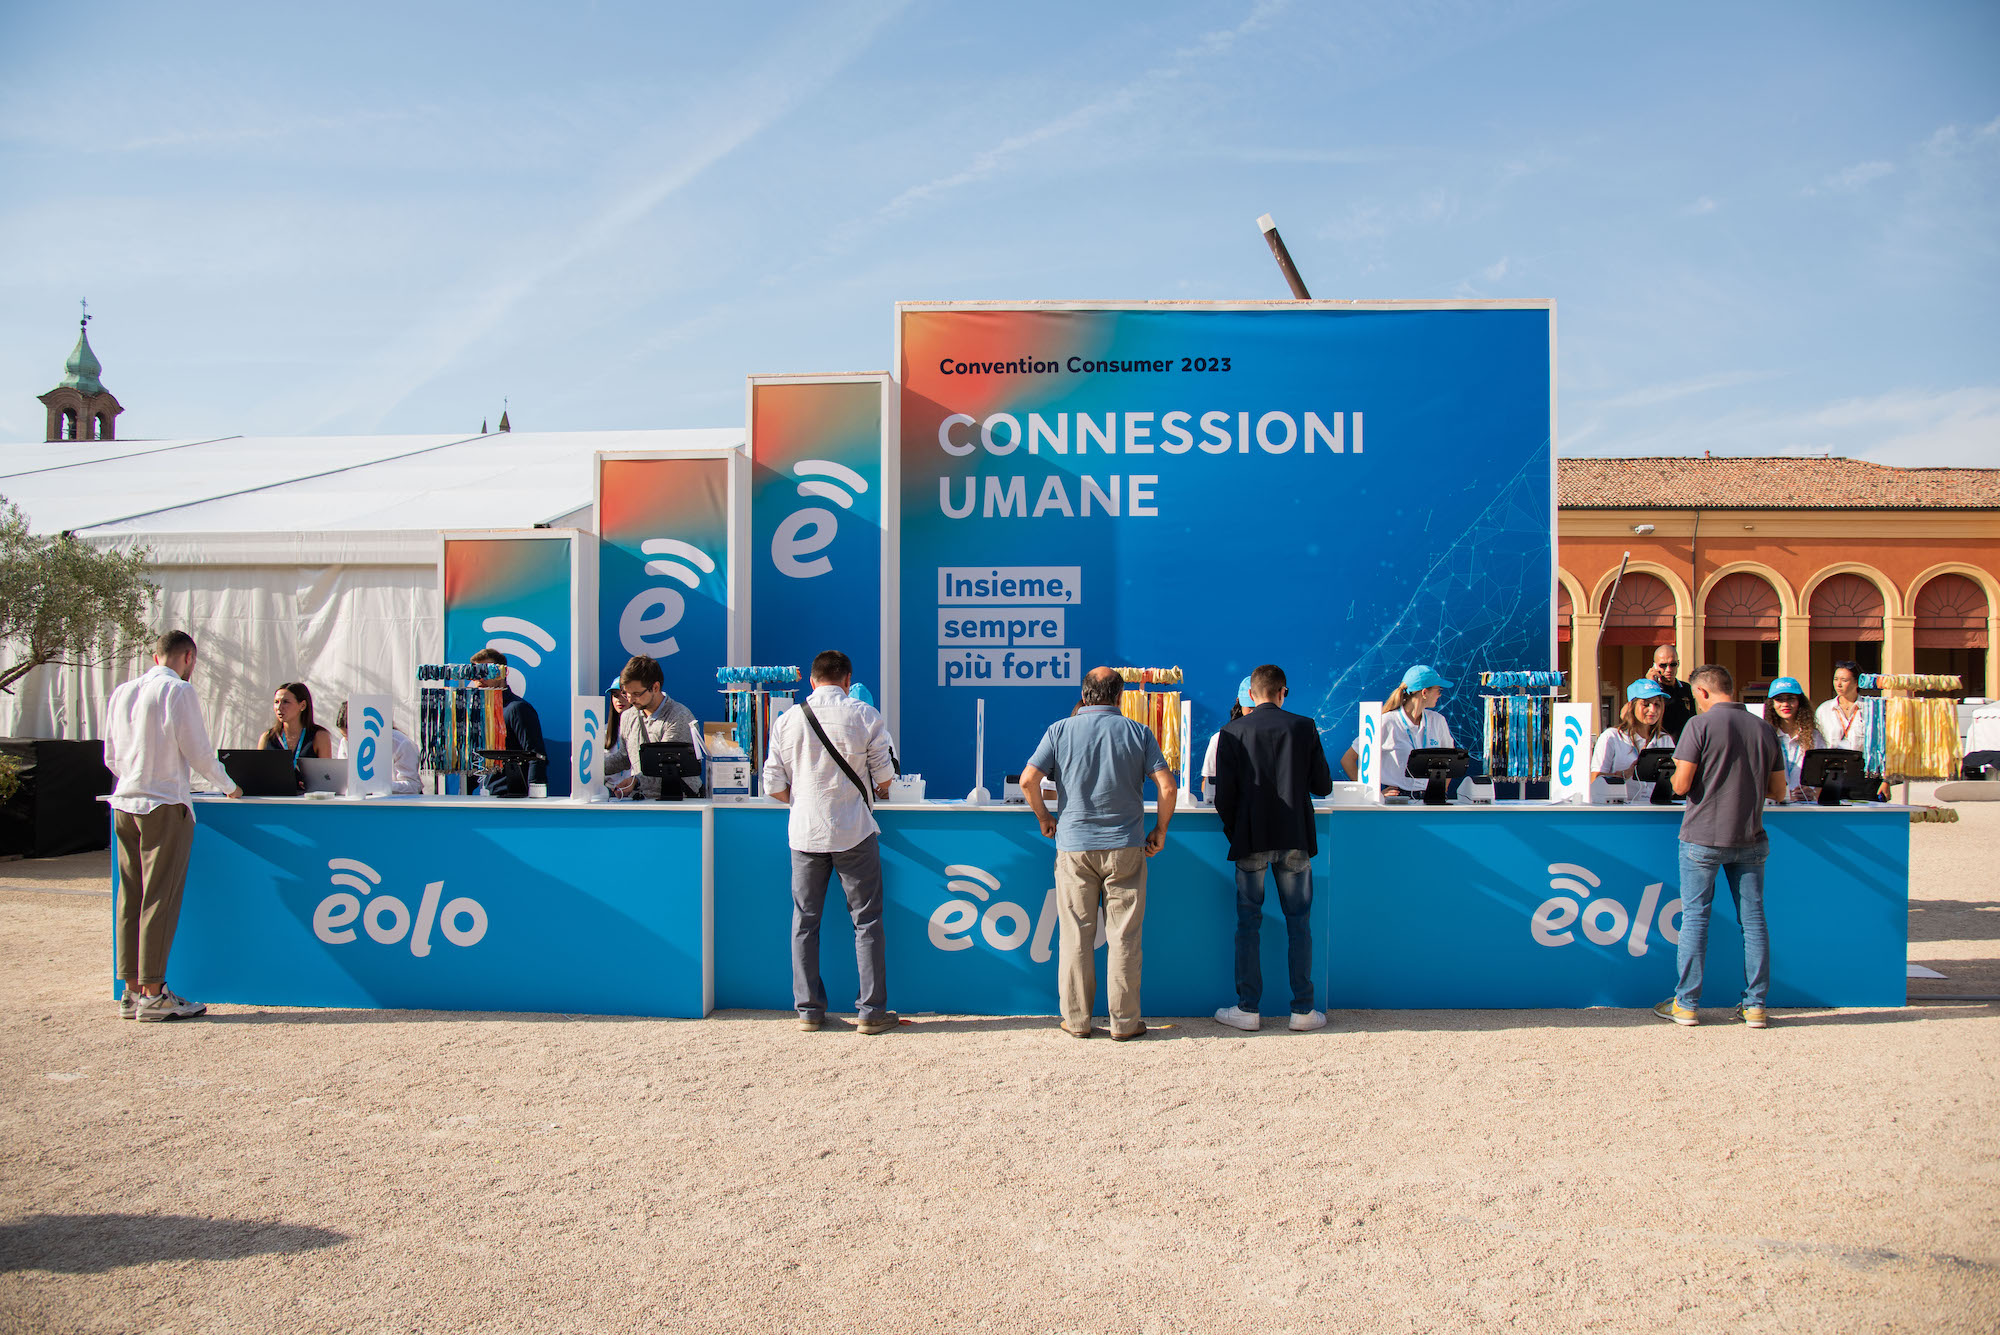 EOLO sceglie IAKI e la Romagna per la convention annuale in cui annuncia il potenziamento della rete e l’offerta Eolo Fibra